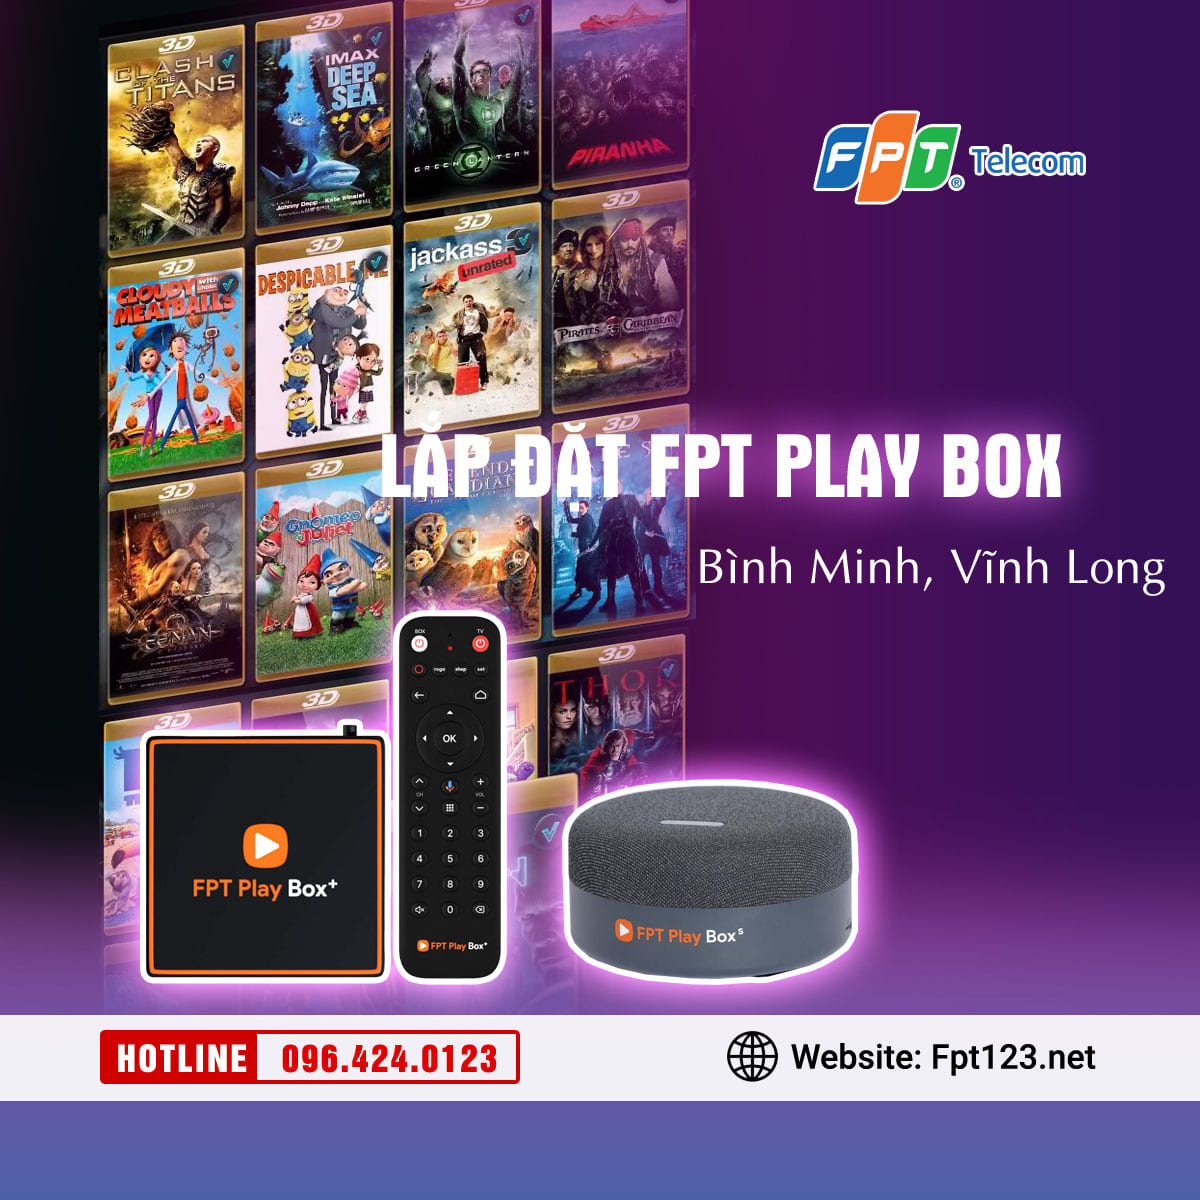 Lắp đặt FPT Play Box tại Bình Minh, Vĩnh Long